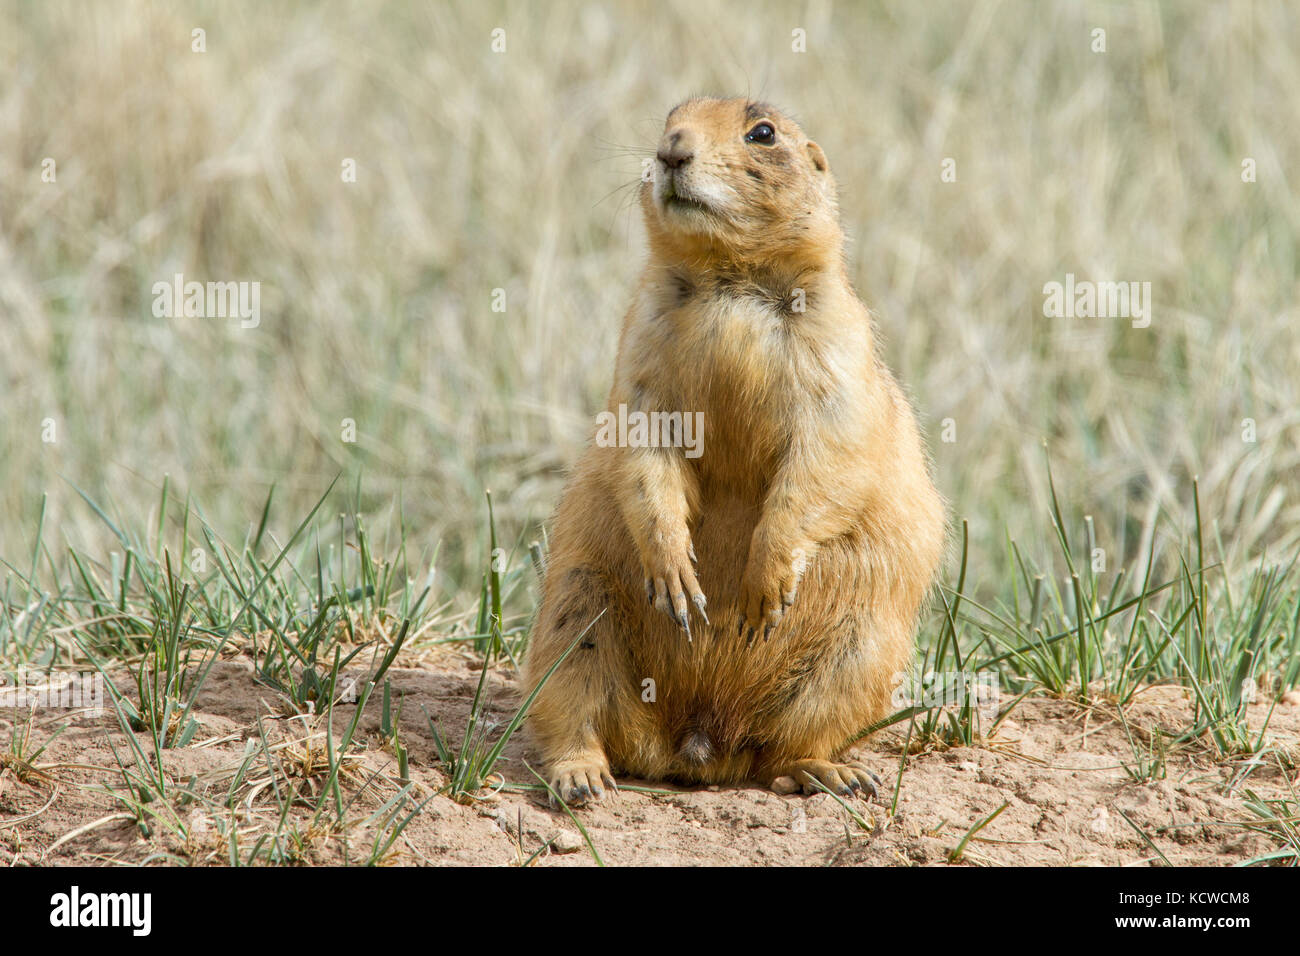 Utah prairie dog (Cynomys parvidens), Bryce Canyon National Park, Utah, USA Stock Photo